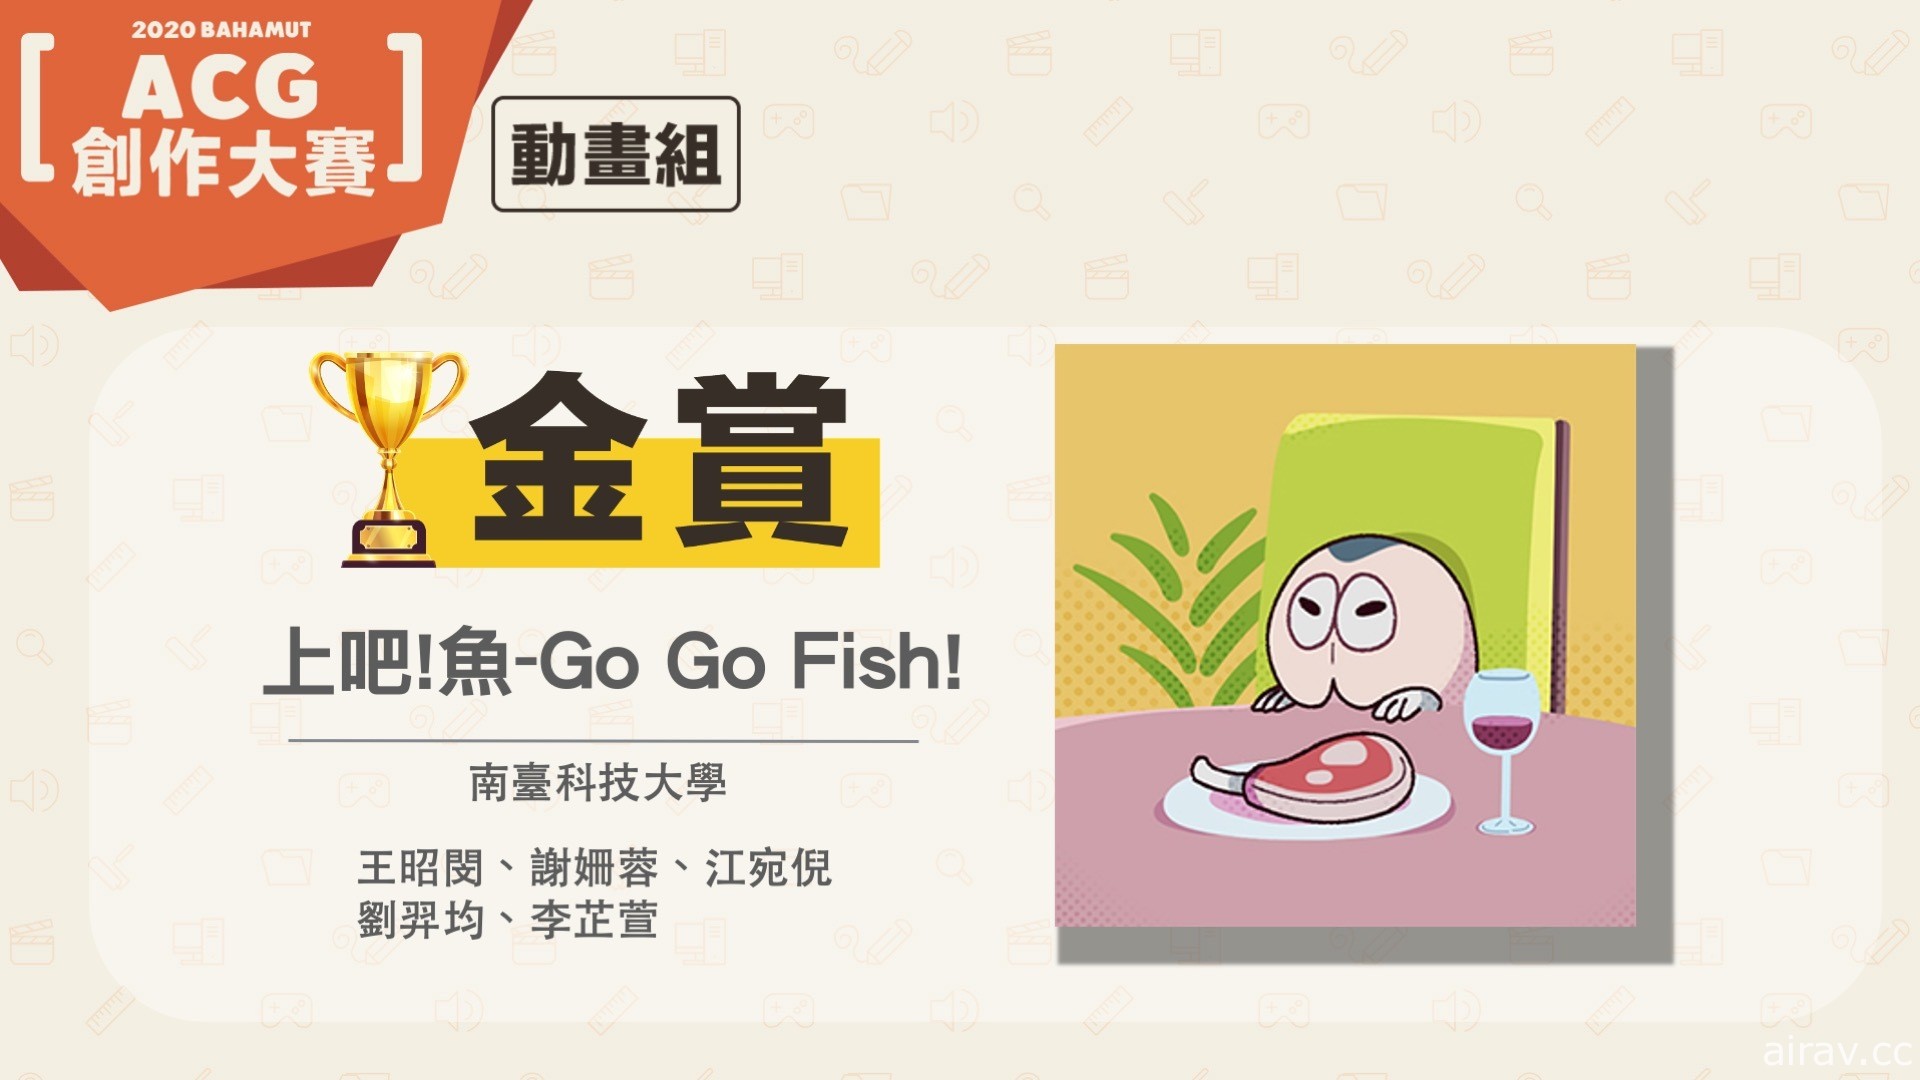 巴哈姆特 2020 ACG 創作大賽「動畫組」得獎揭曉 《上吧！魚 - Go Go Fish!》奪金賞